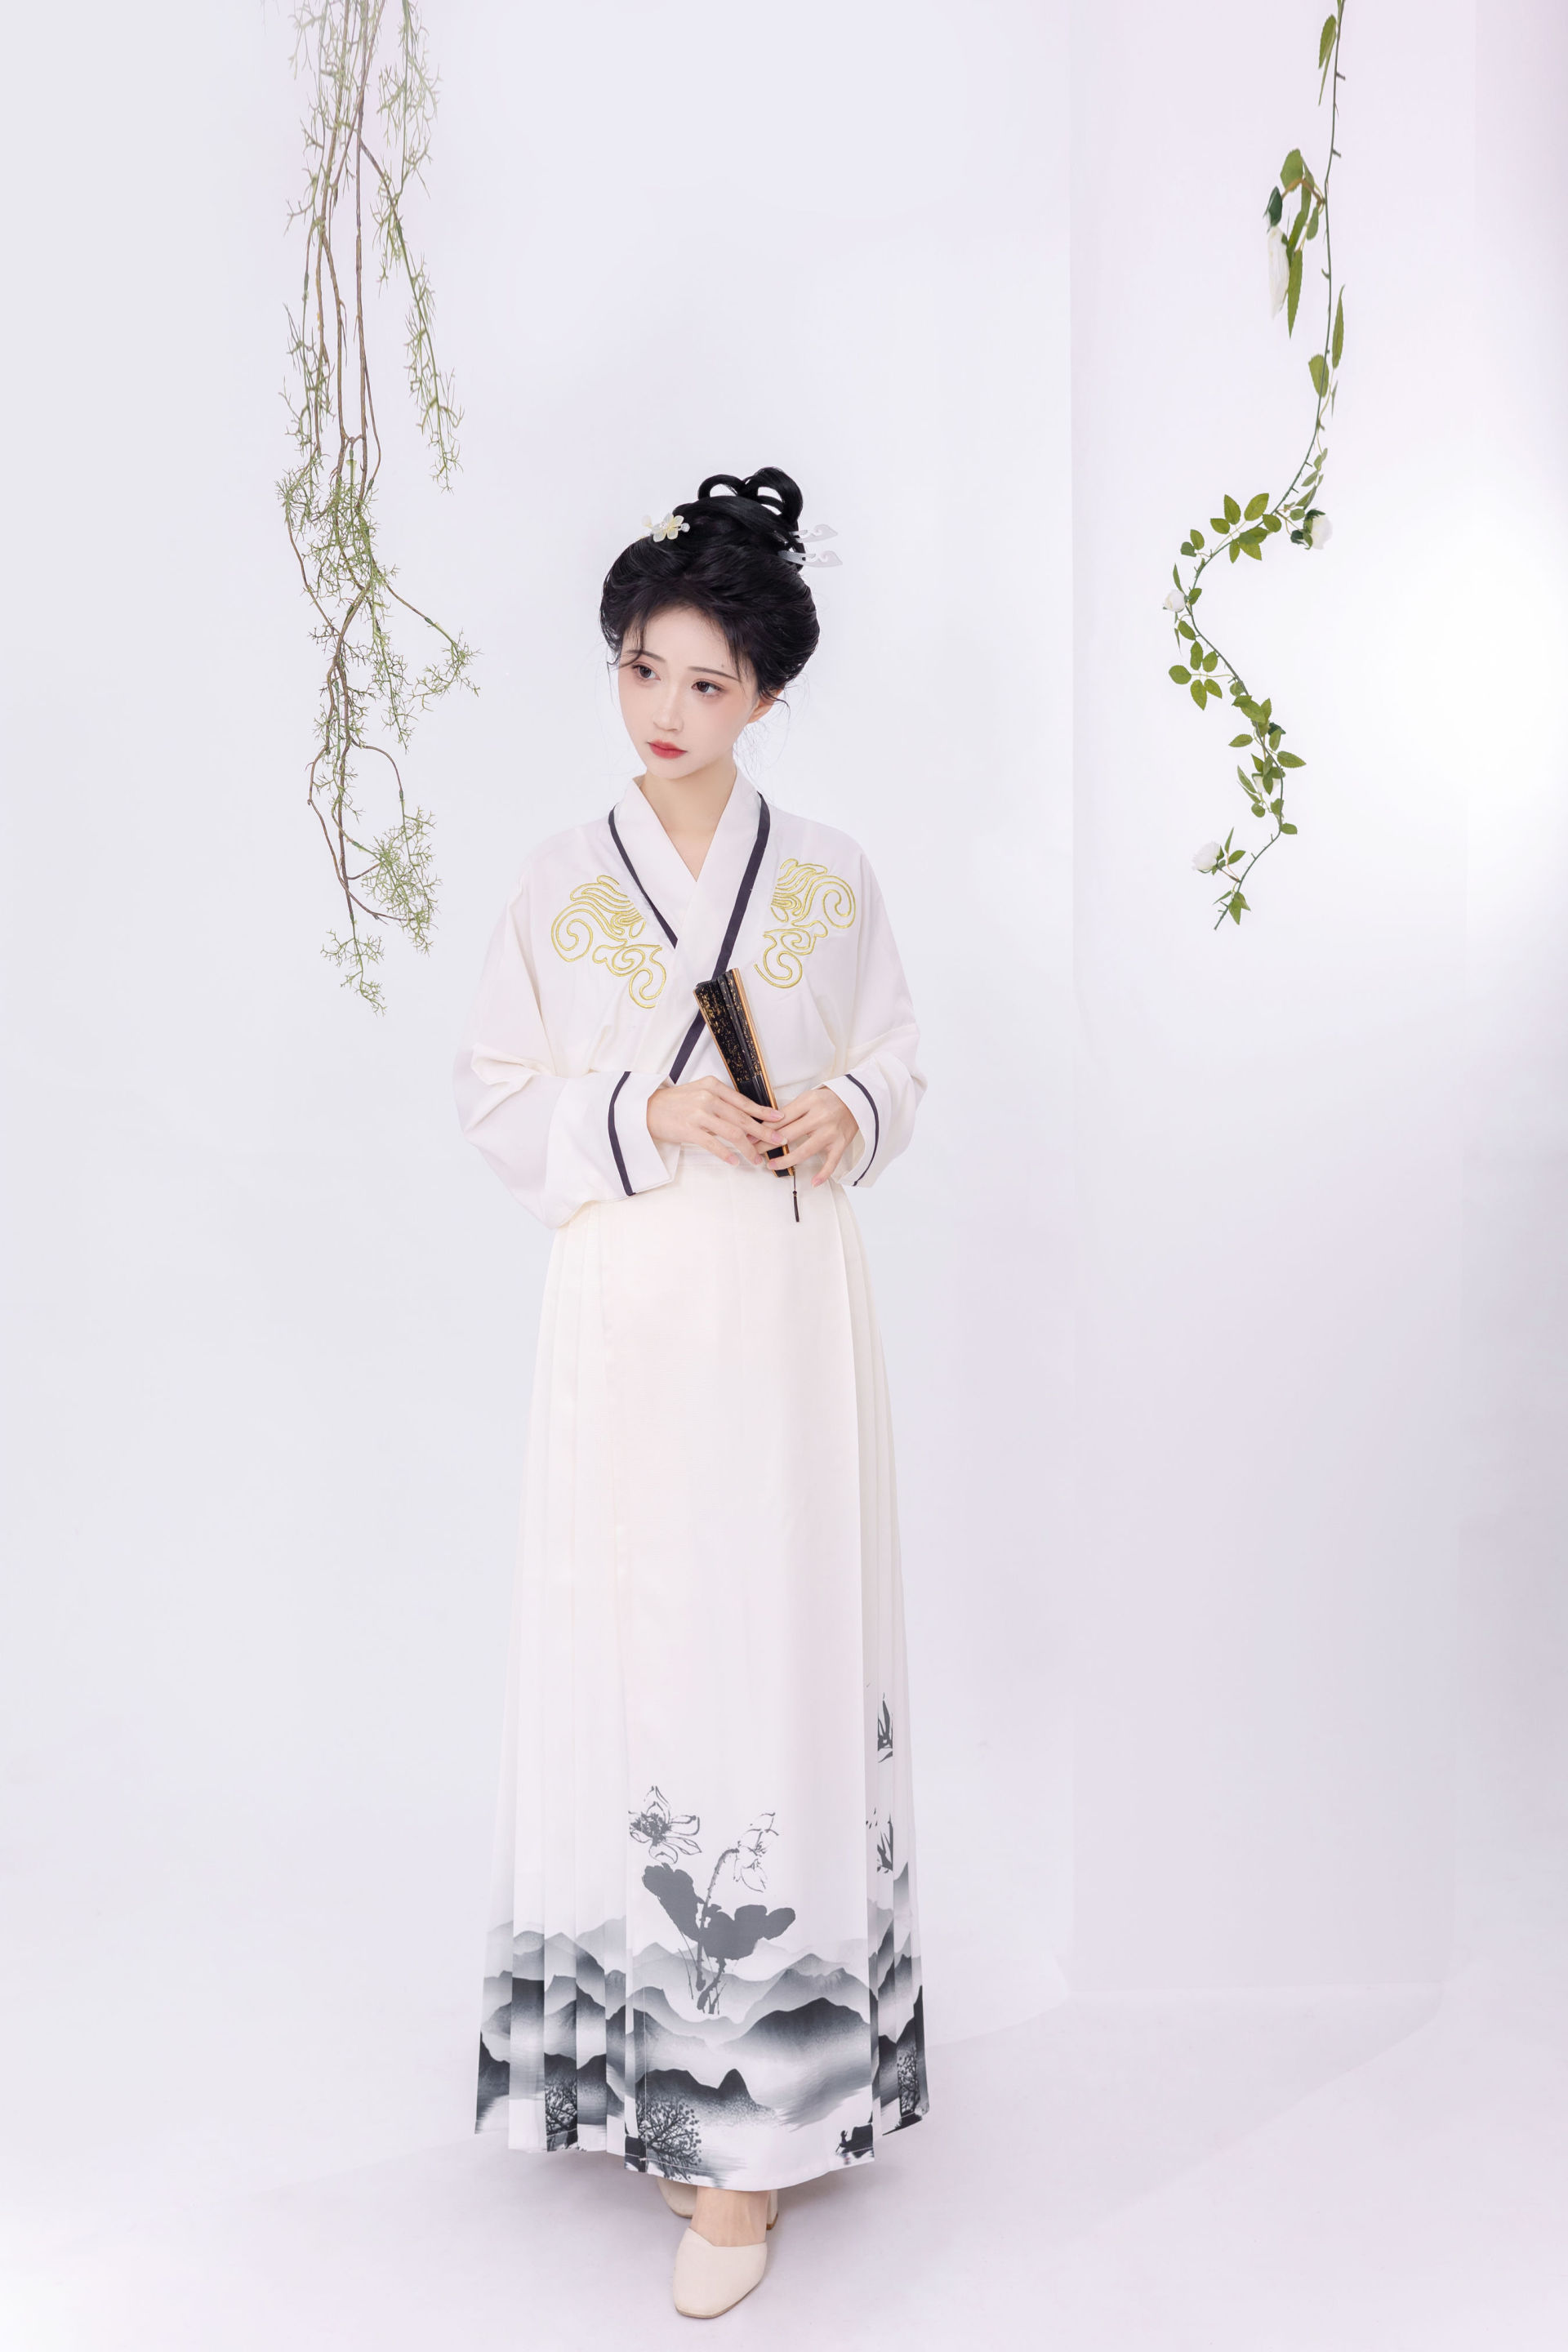 花与剑 中国风 古典 摄影 美图 古装 模特